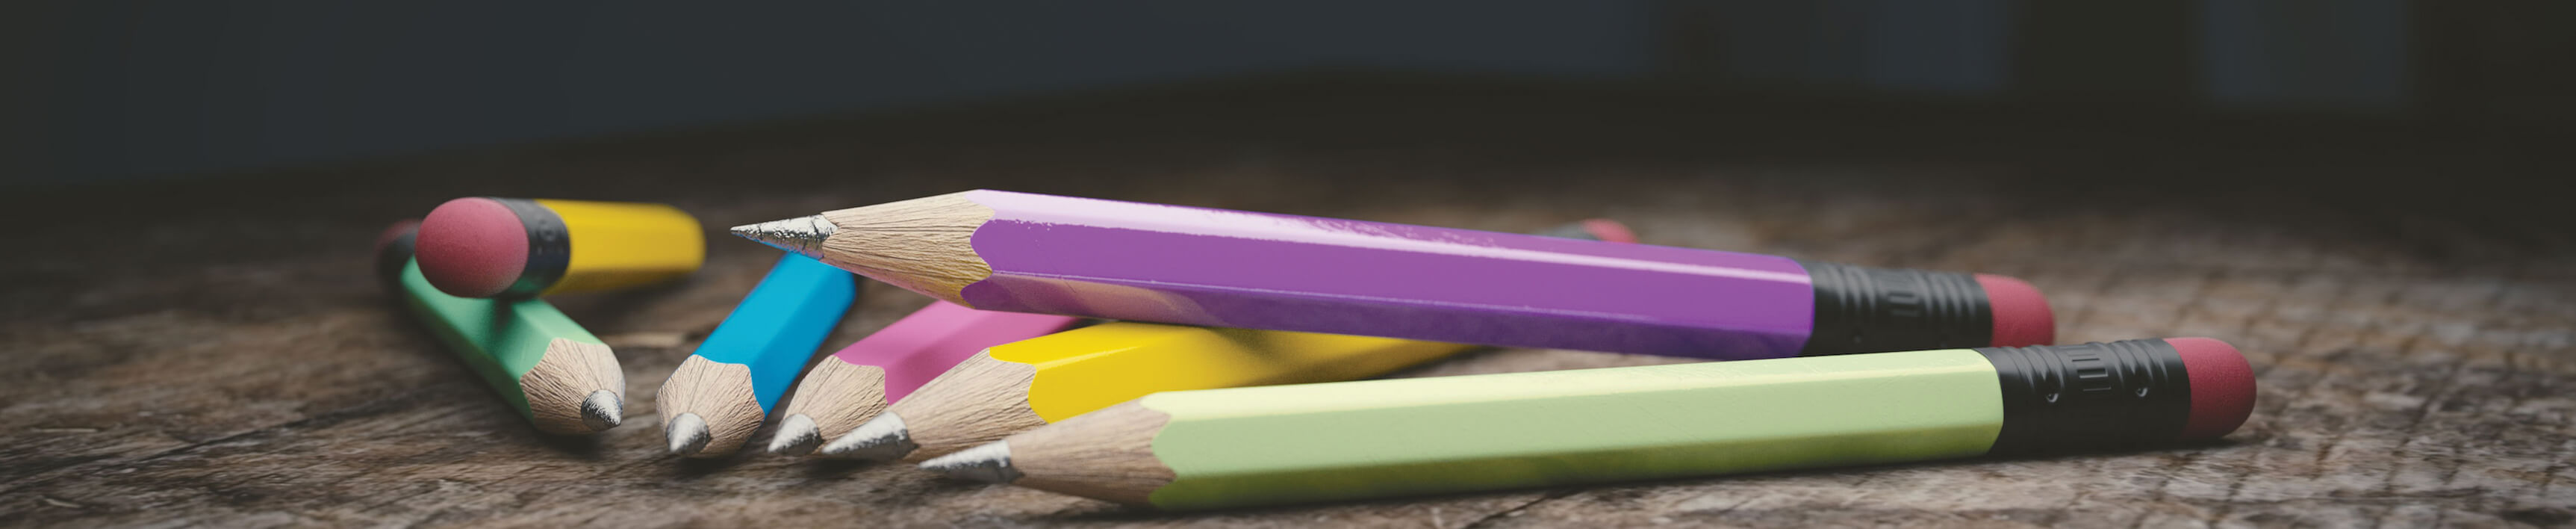 Siete lápices de madera de diferentes colores sobre un piso de madera